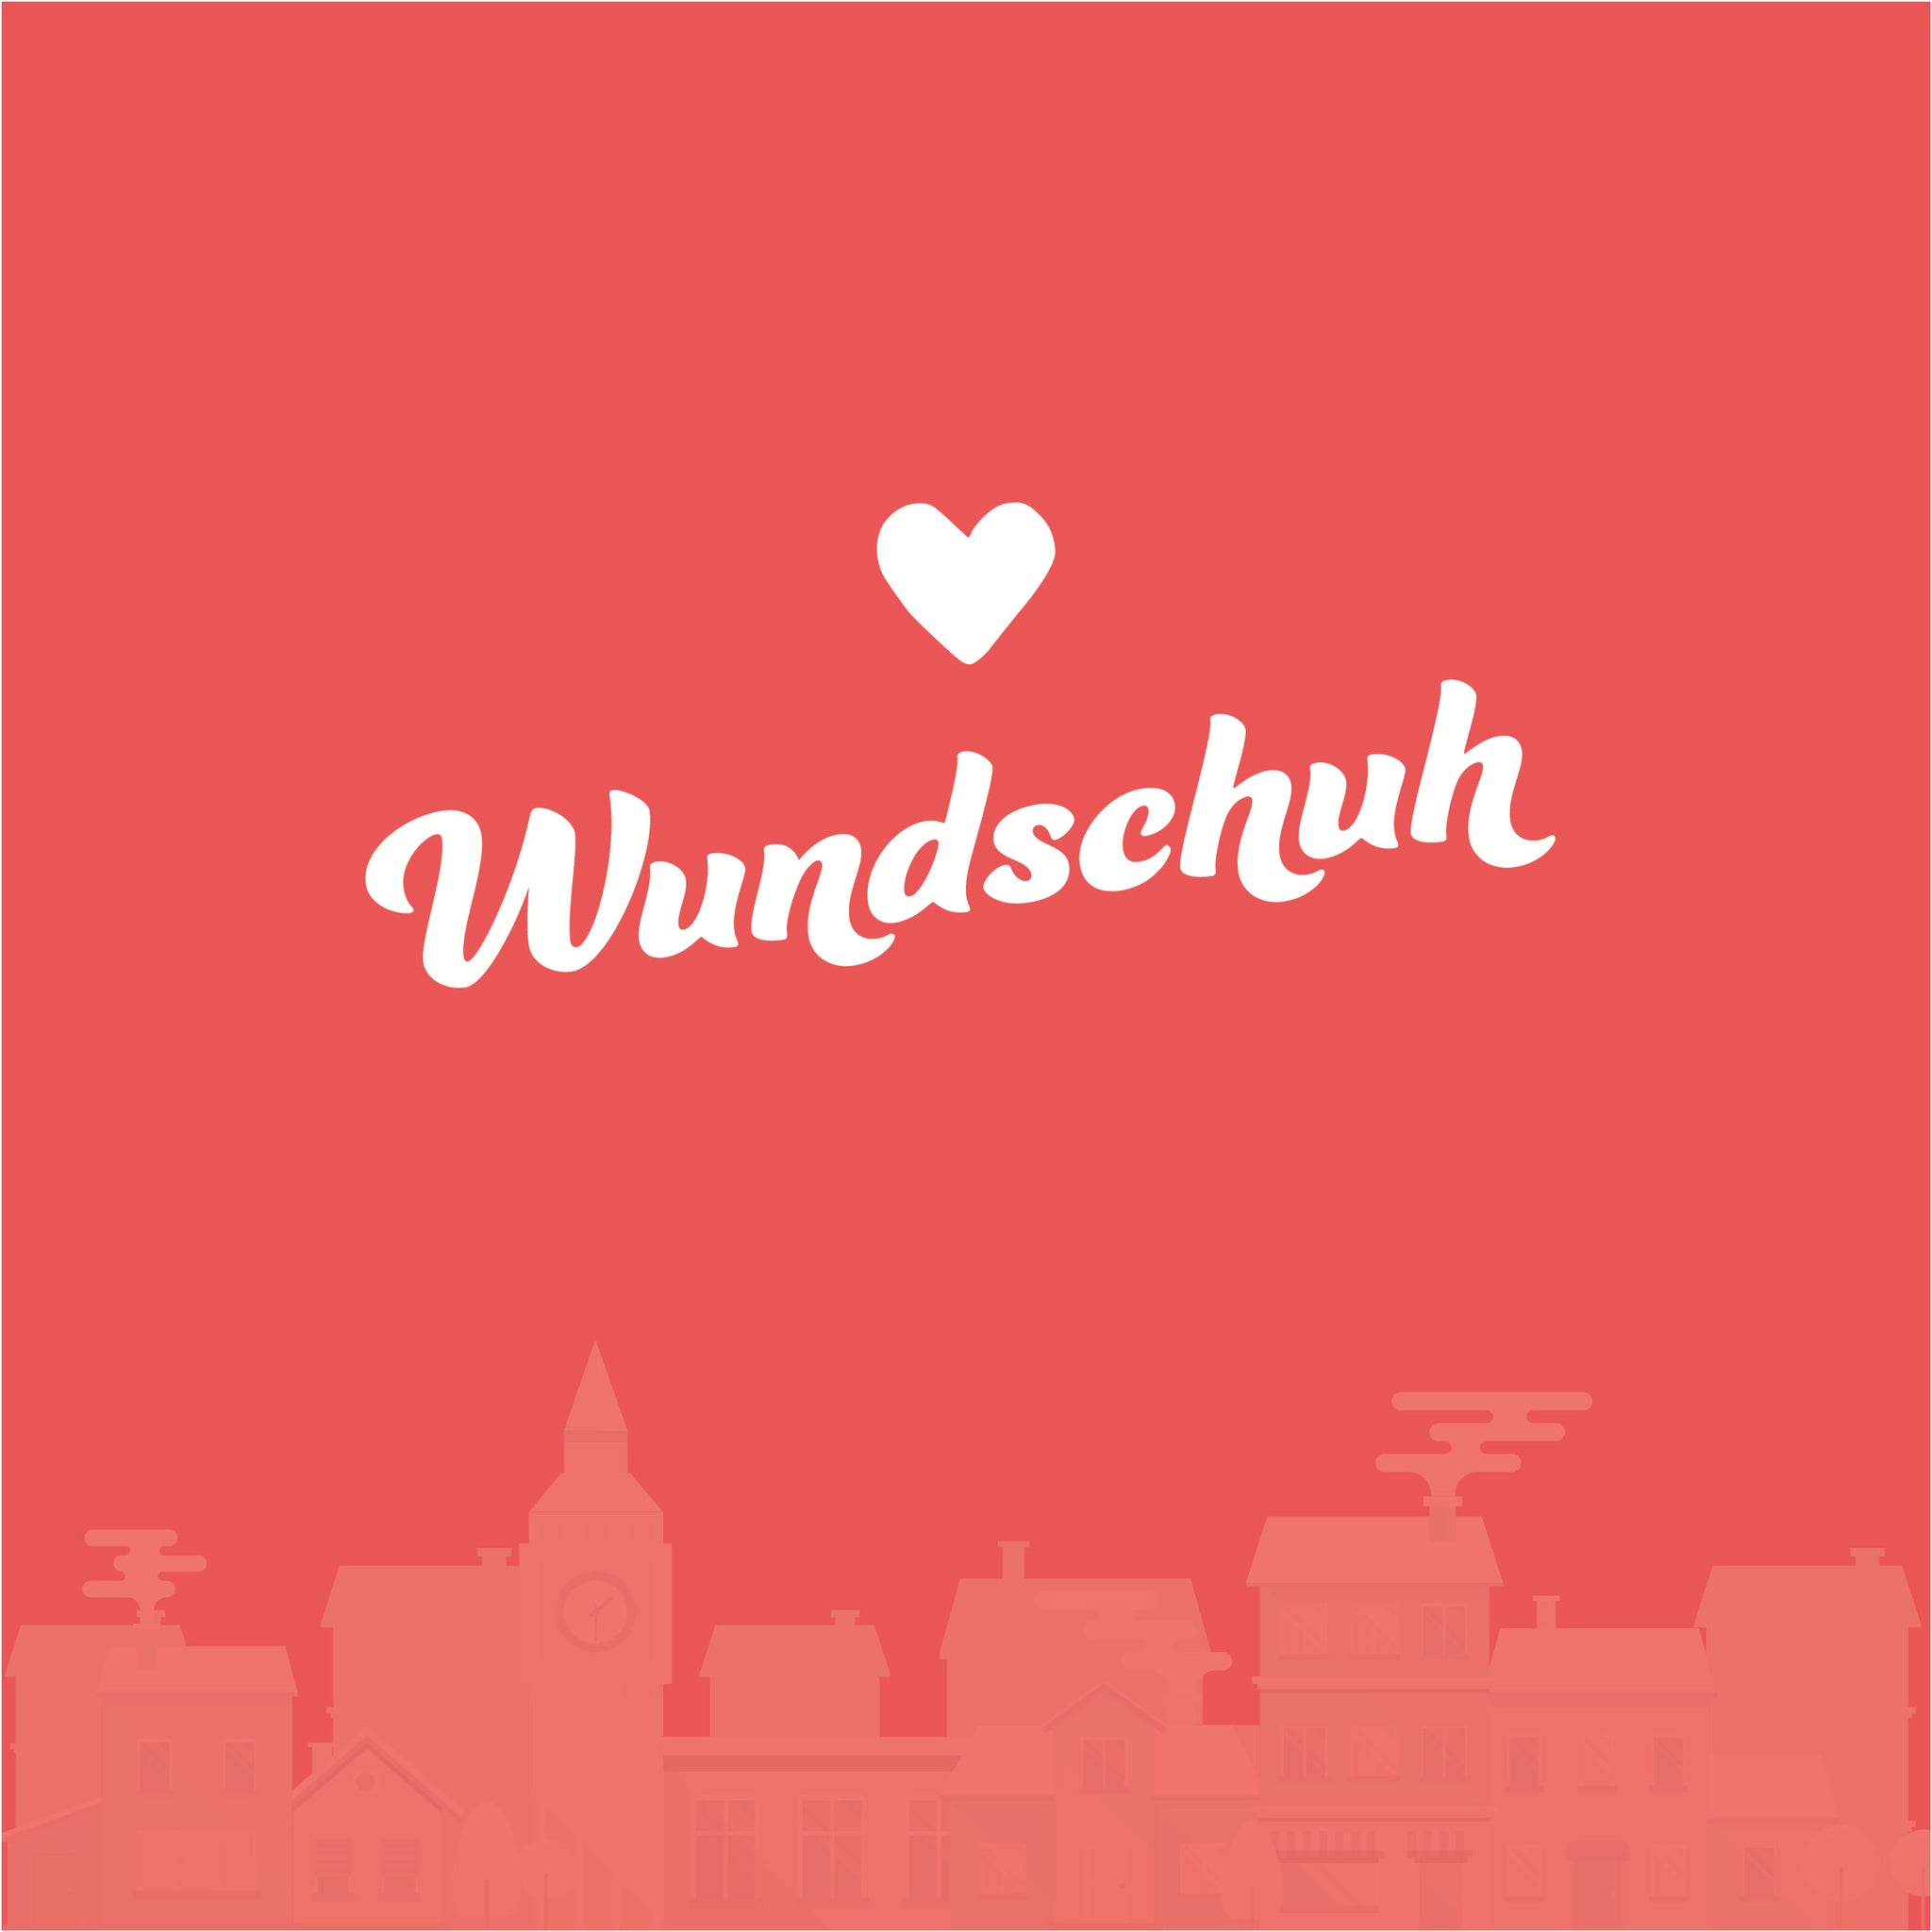 Wundschuh